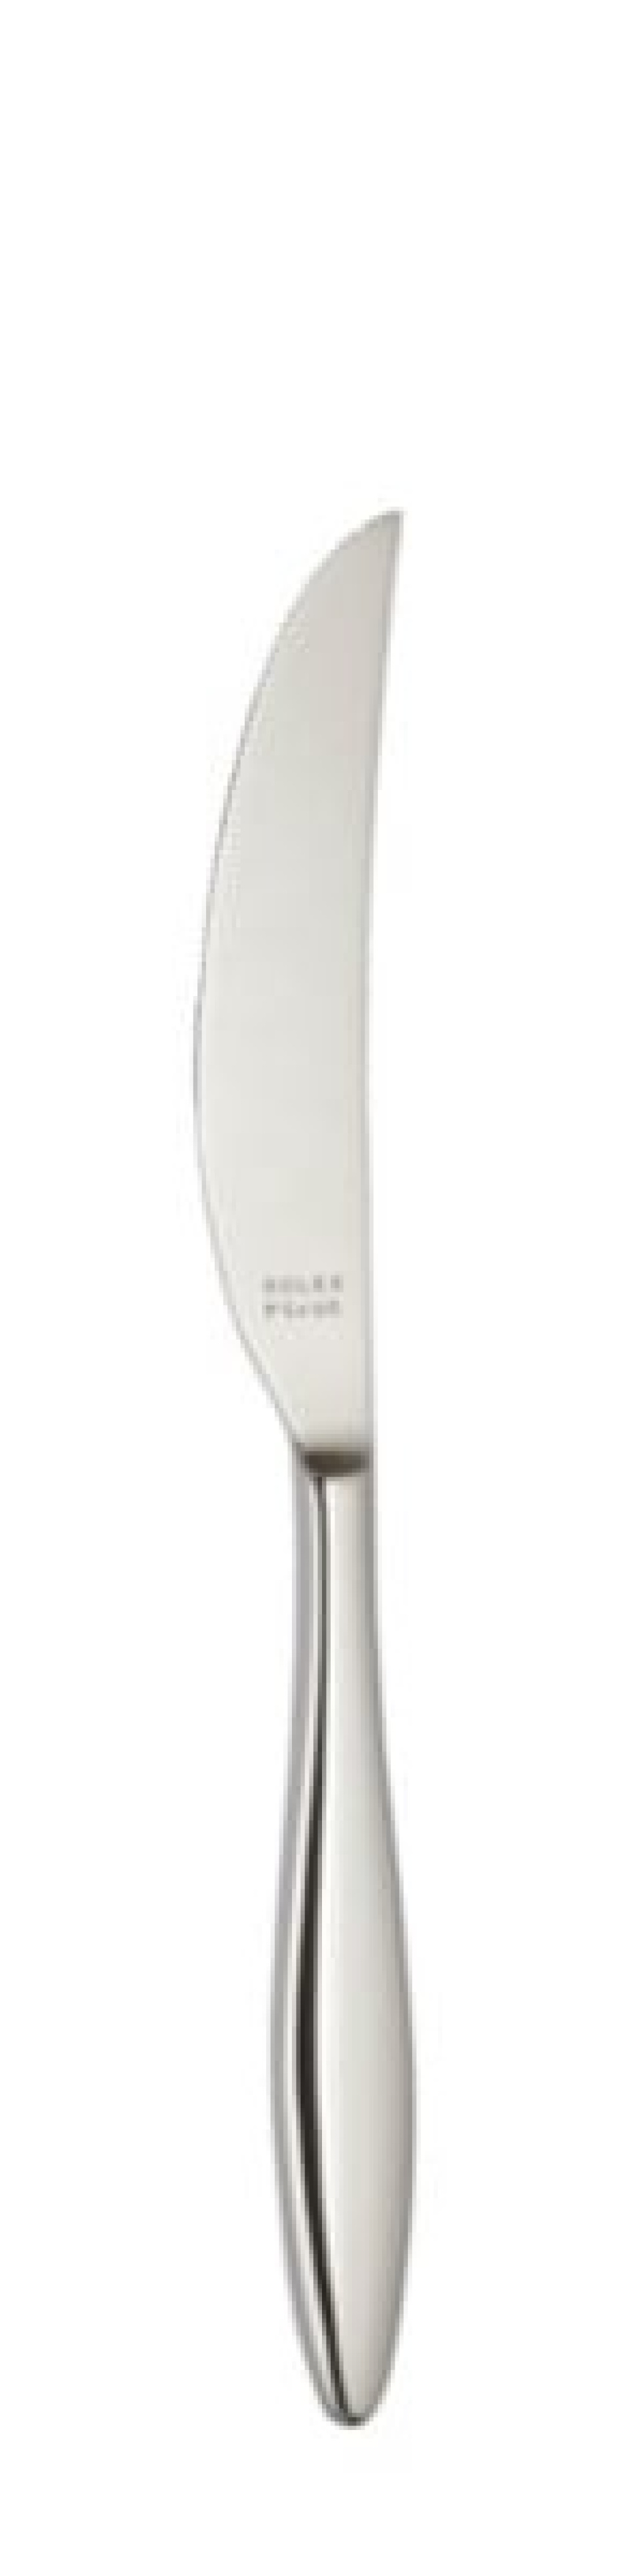 Terra Tafelmesser 239 mm - Solex in der Gruppe Tischgedeck / Besteck / Messer bei The Kitchen Lab (1284-21645)